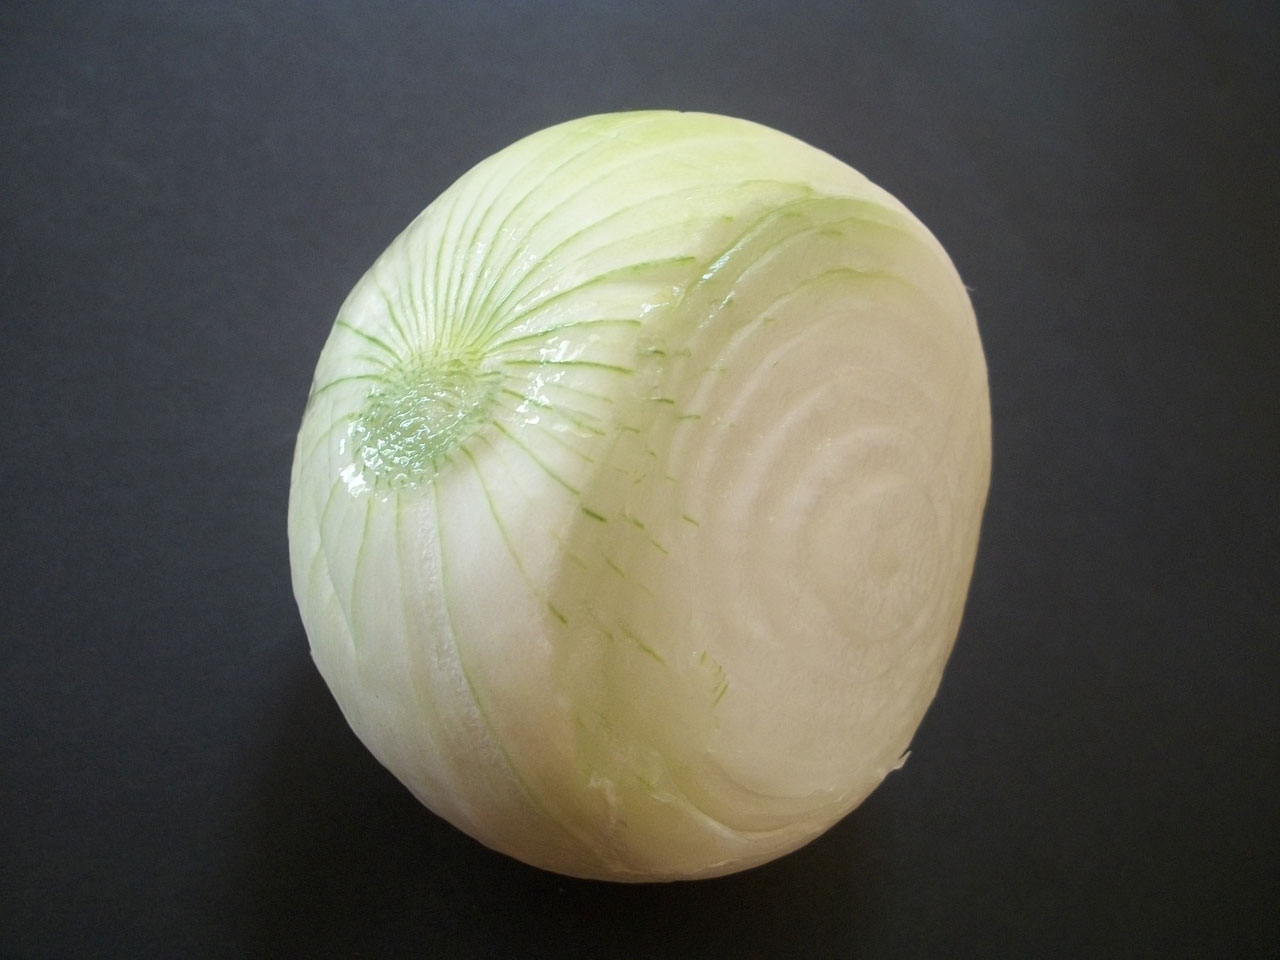 onion vegetable white free photo